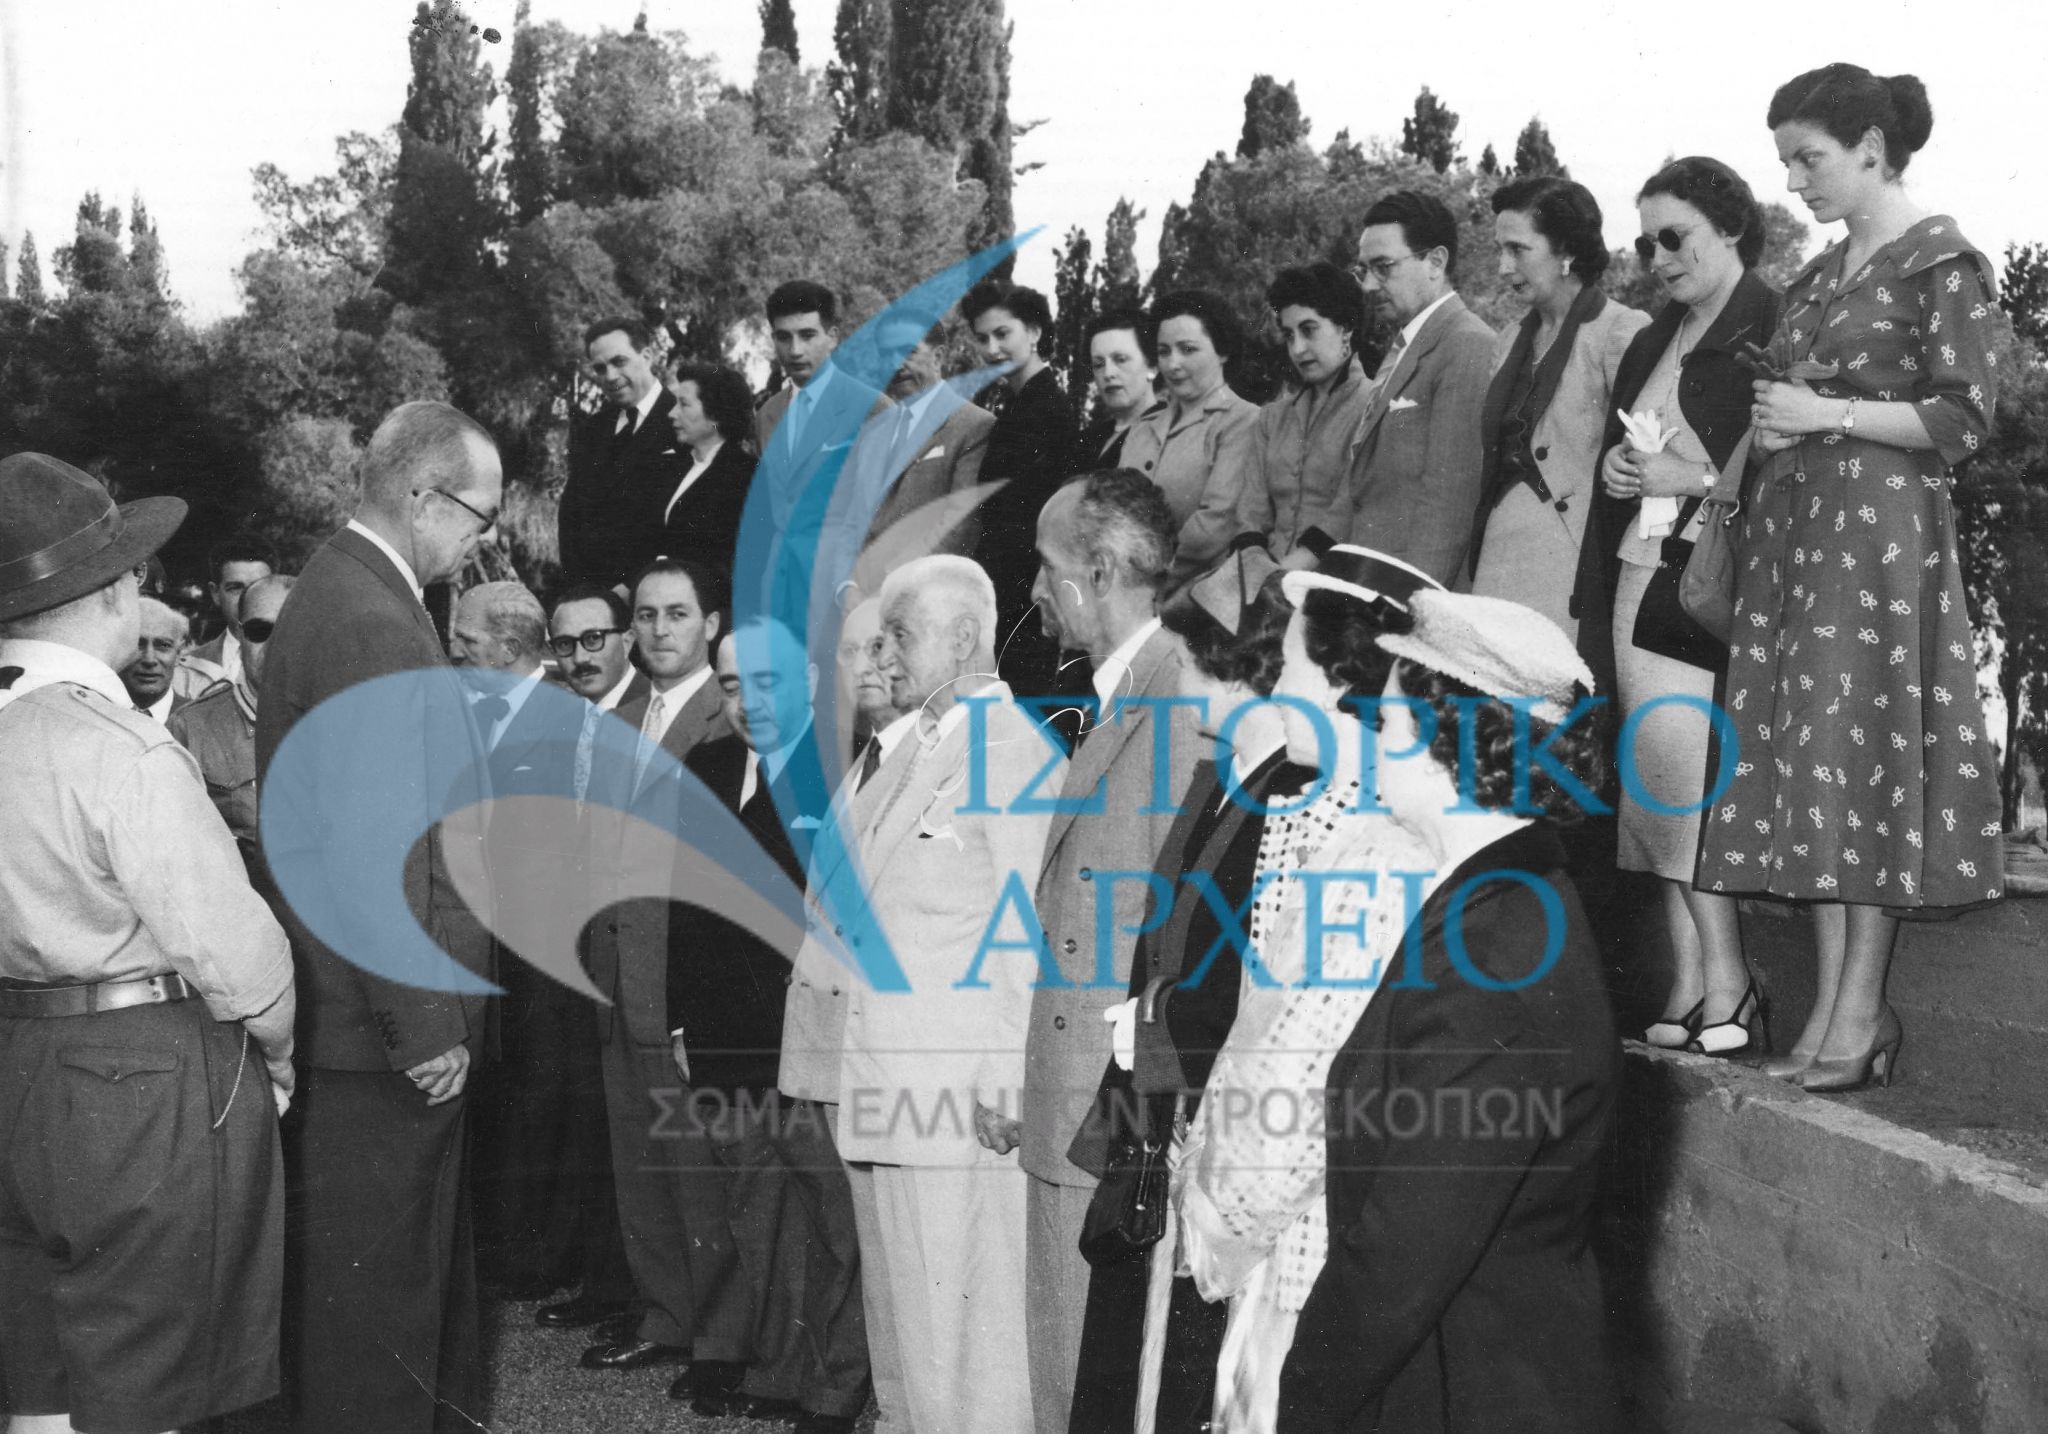 Ο Βασιλιάς Παύλος με τα μέλη της Κεντρικής Επιτροπής Ενώσεων Παλαιών Προσκόπων σε εκδήλωση στο ΠΥΒΑ το 1954.